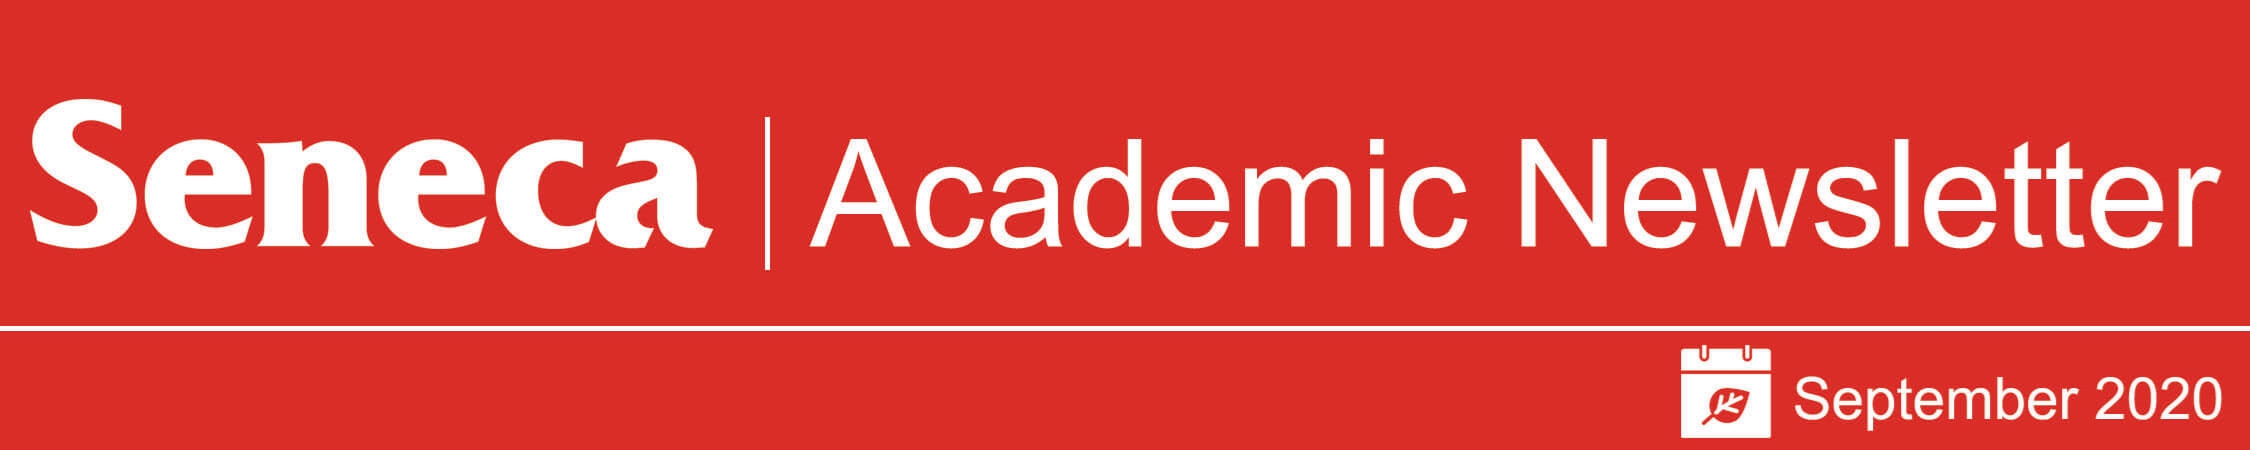 The header logo for the September 2020 issue of the Academic Newsletter